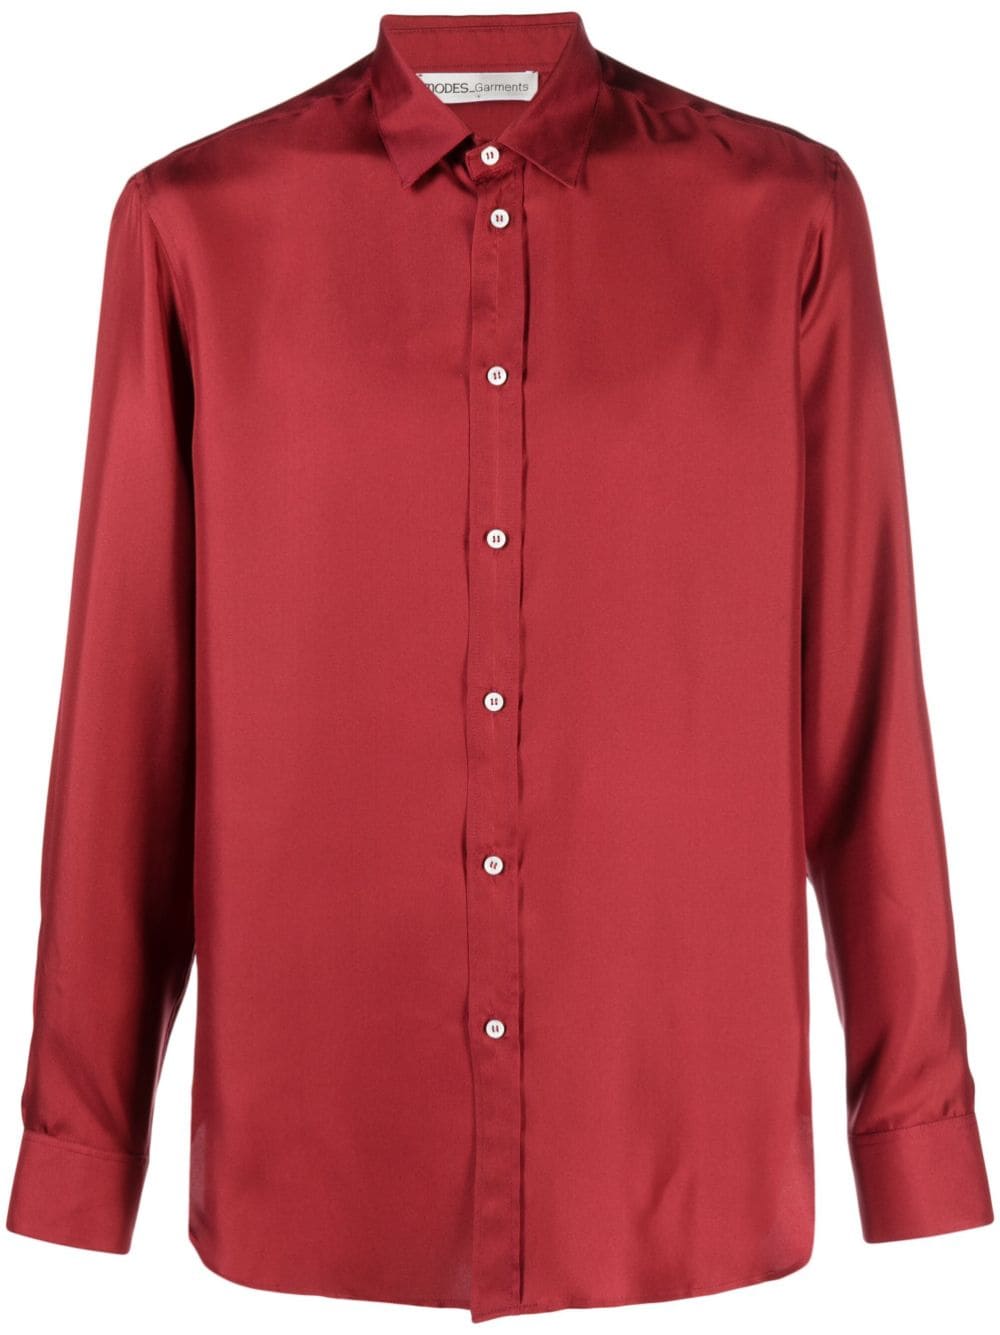 MODES GARMENTS buttoned silk shirt - Red von MODES GARMENTS